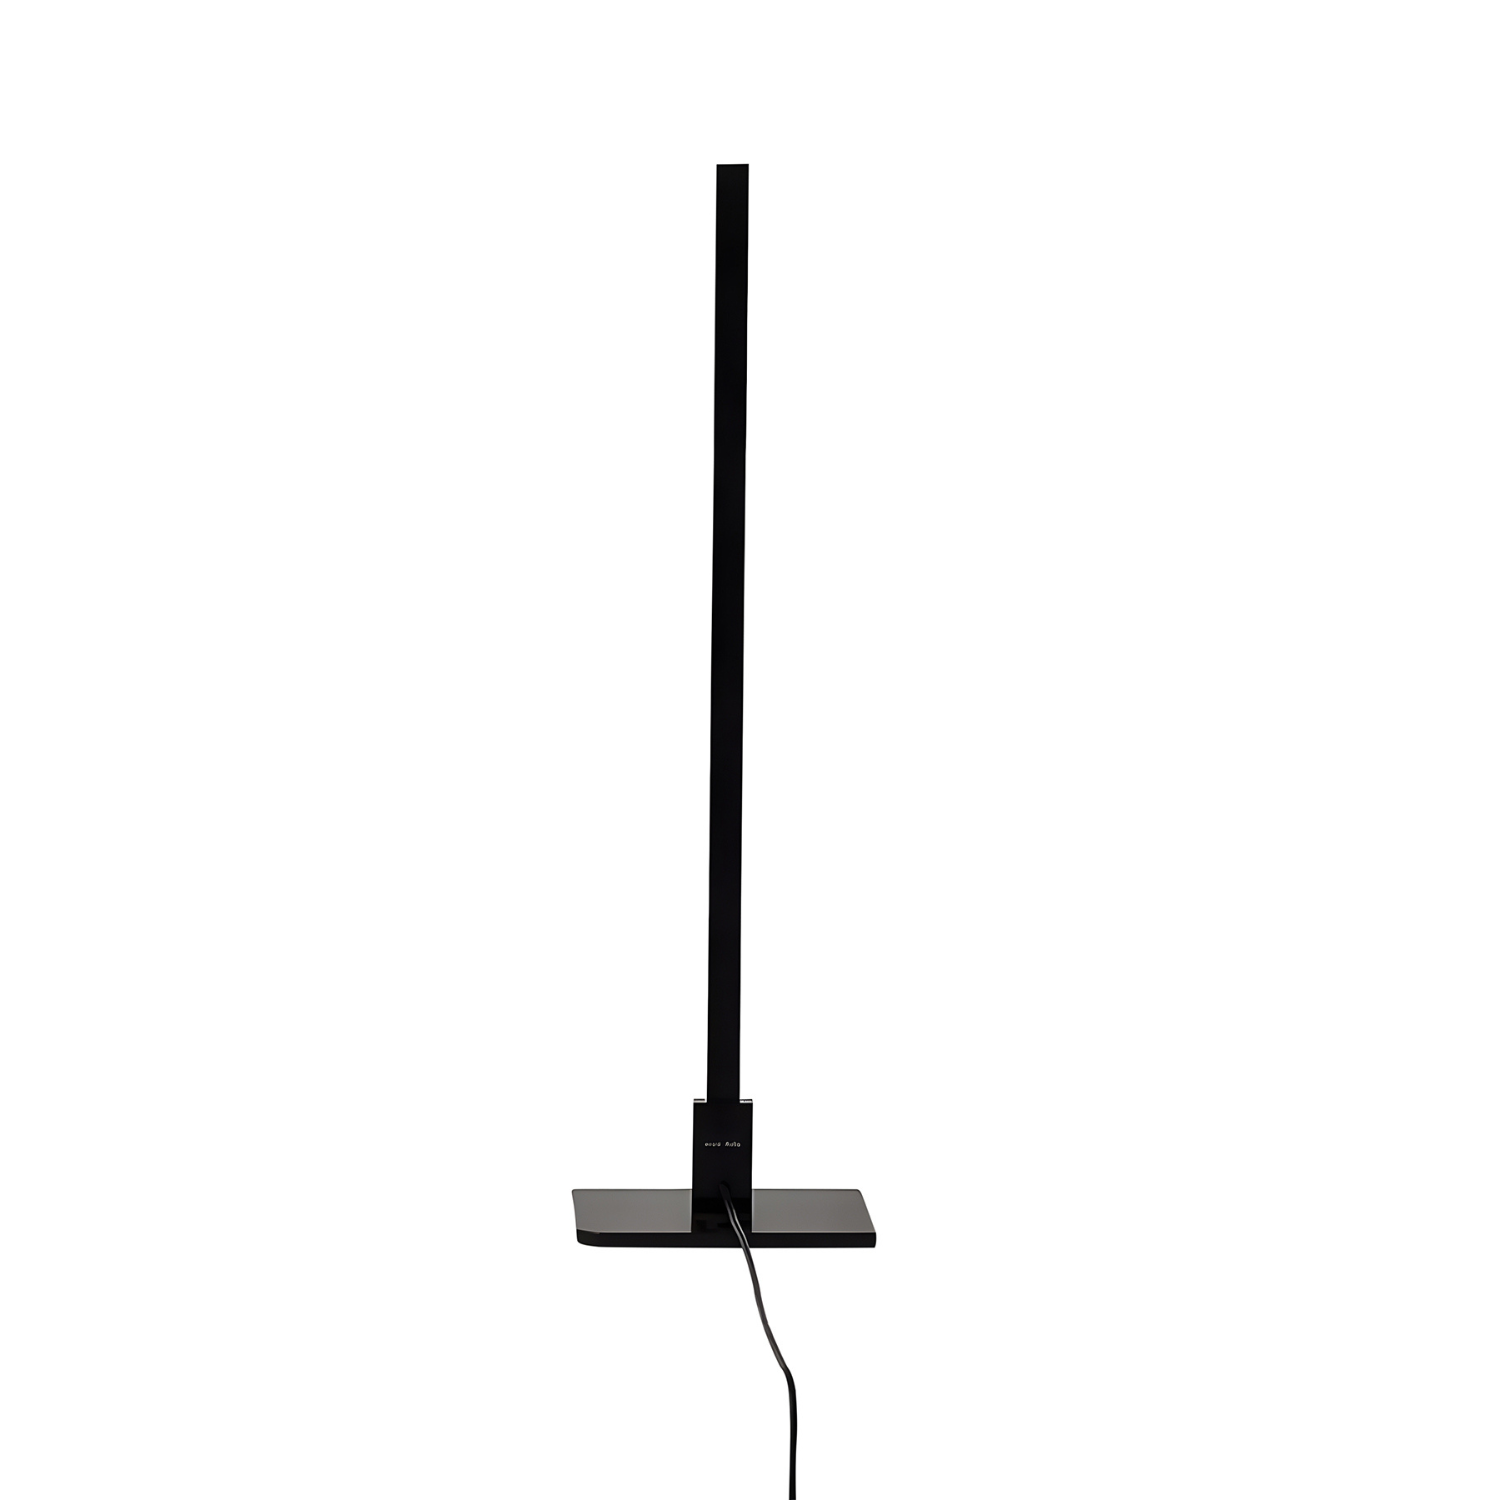 RIGA - Table Lamp